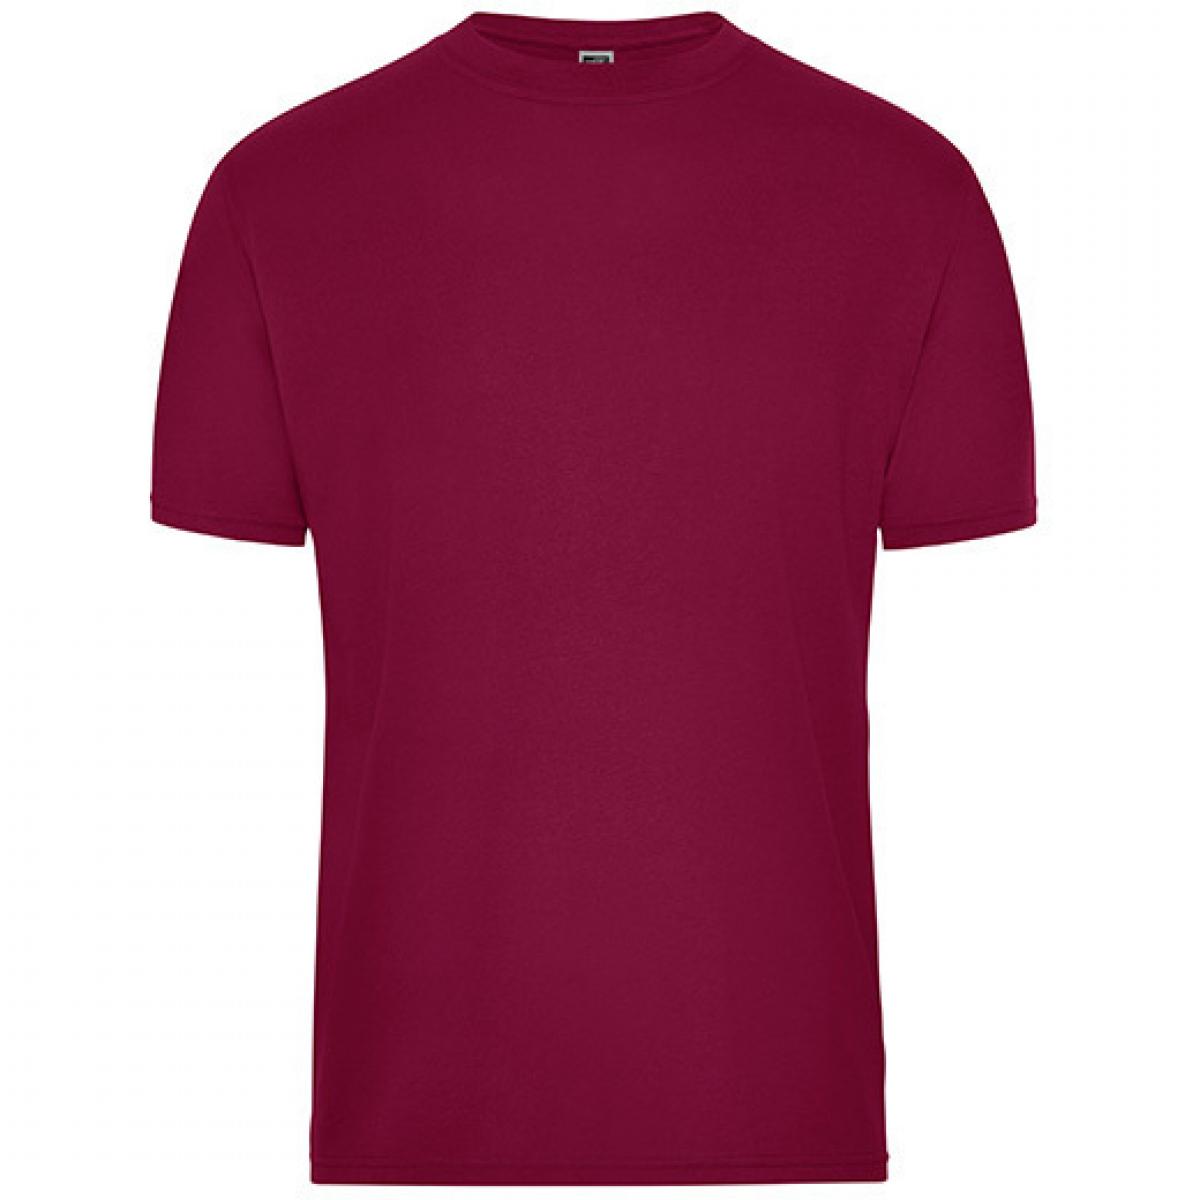 Hersteller: James+Nicholson Herstellernummer: JN1808 Artikelbezeichnung: Men‘s BIO Workwear T-Shirt, Waschbar bis 60 °C Farbe: Wine